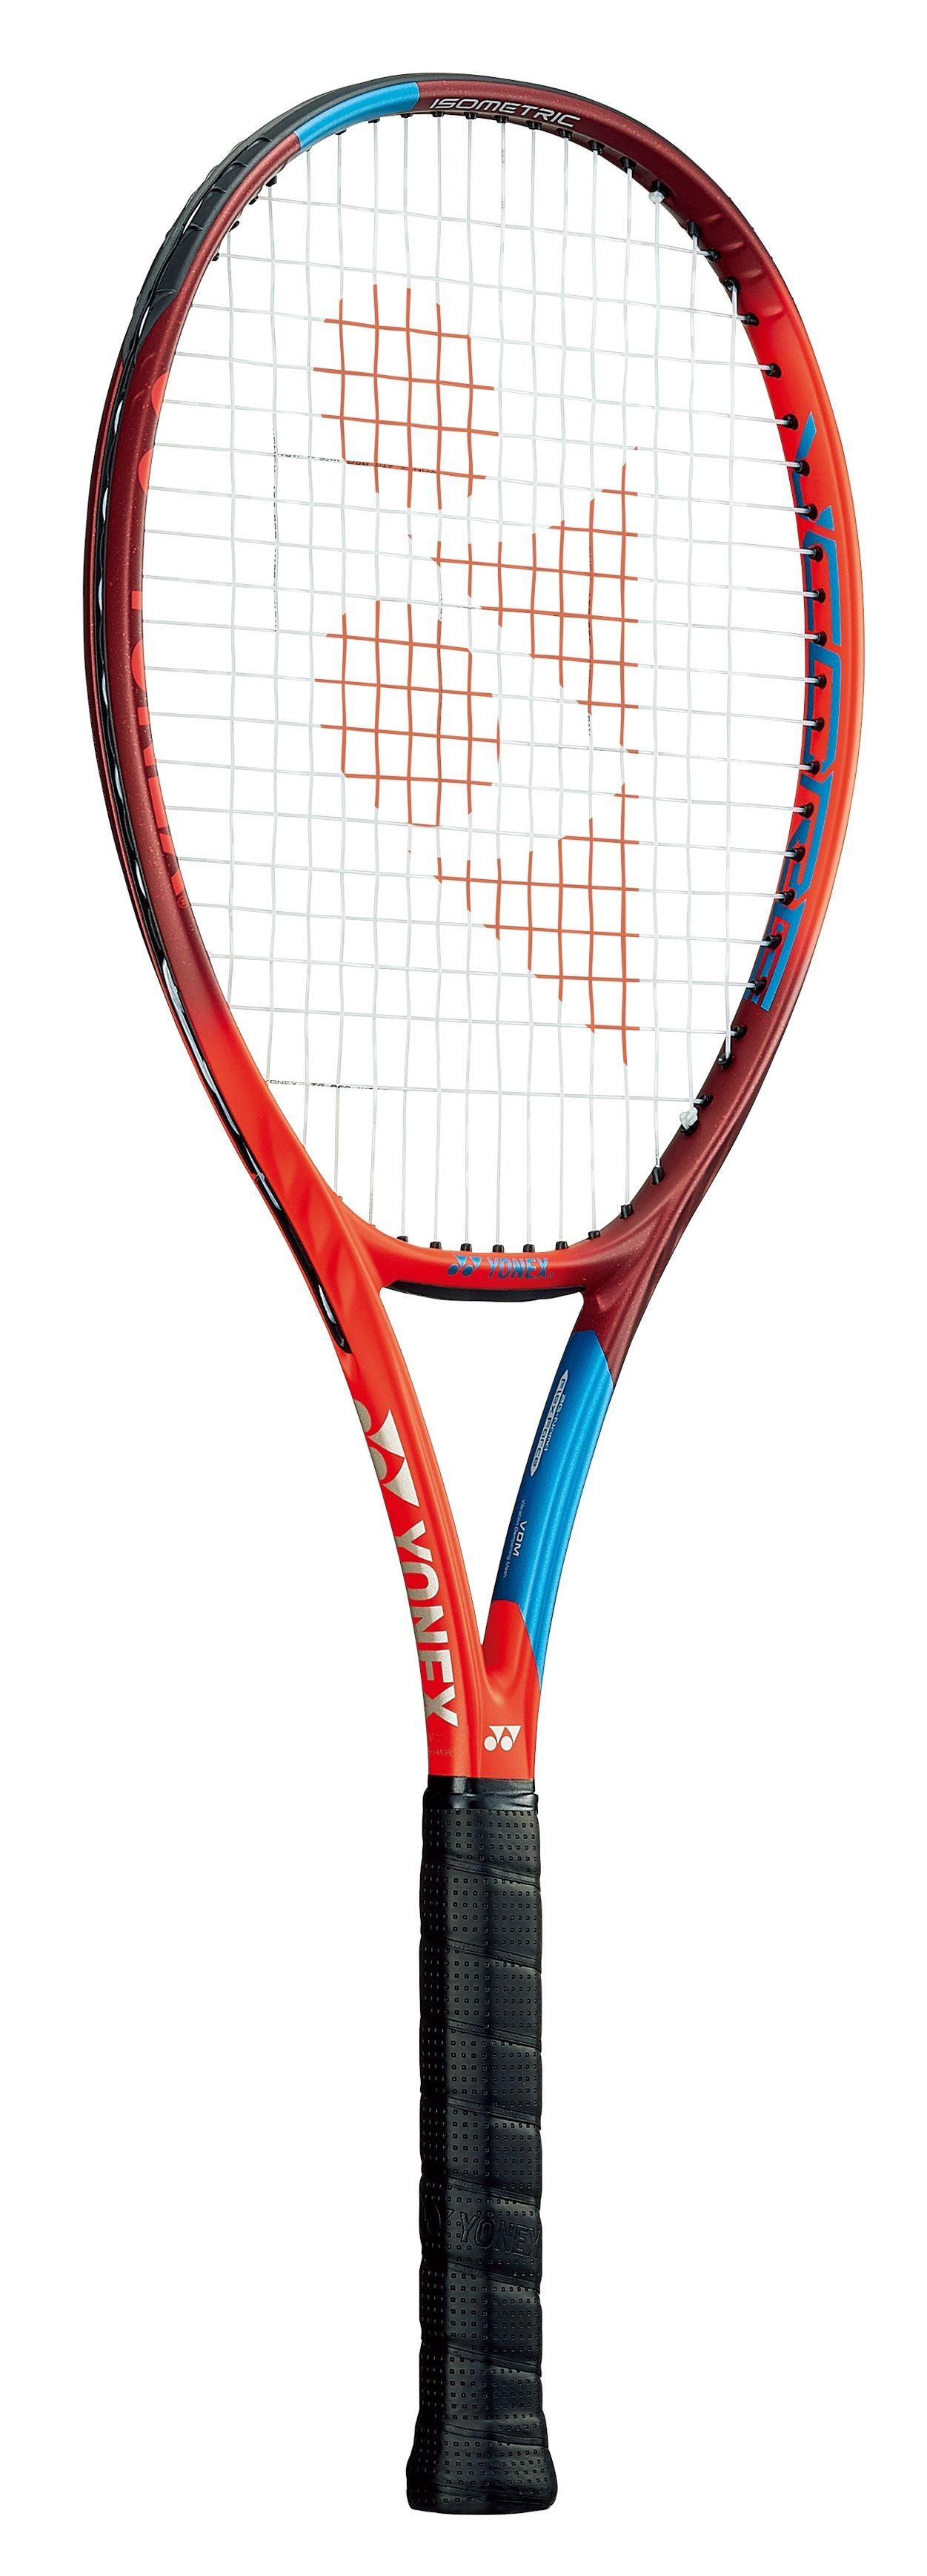 Dunlop Srixon CX 200 TOUR 18x20 Limited Edition Tennis racquet